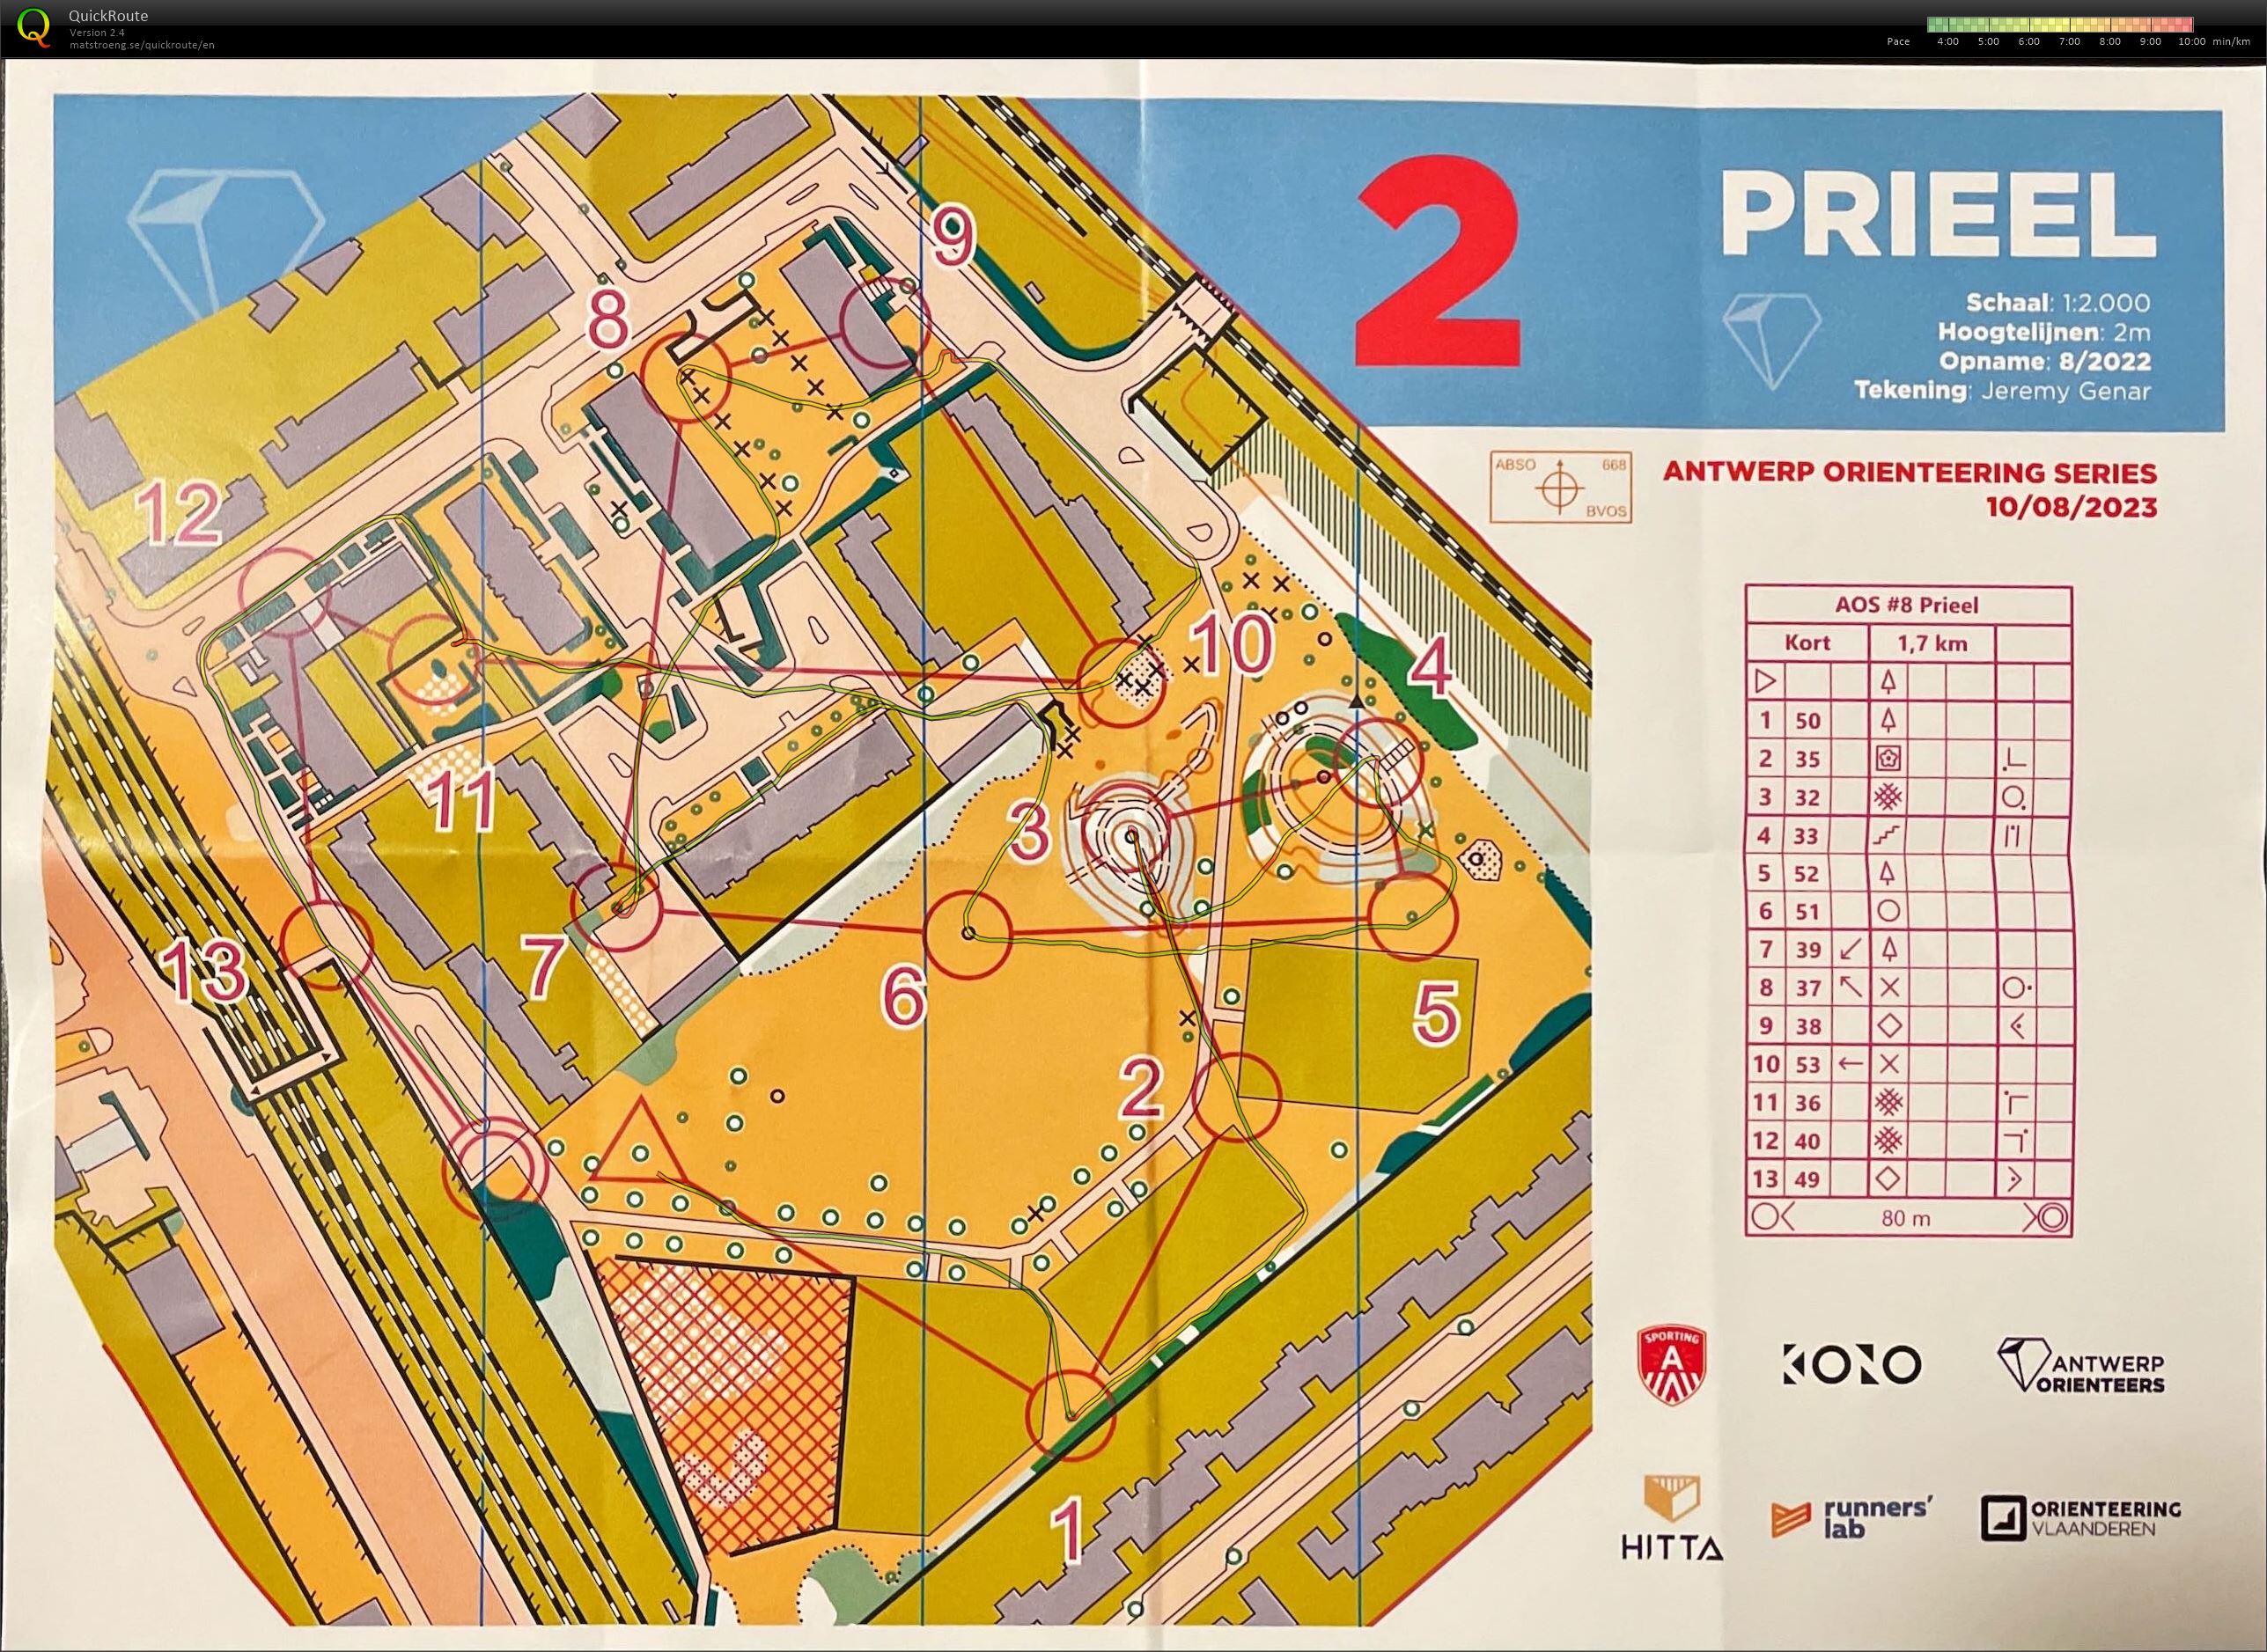 Antwerp Orienteering Series - Prieel - Kort (10.08.2023)